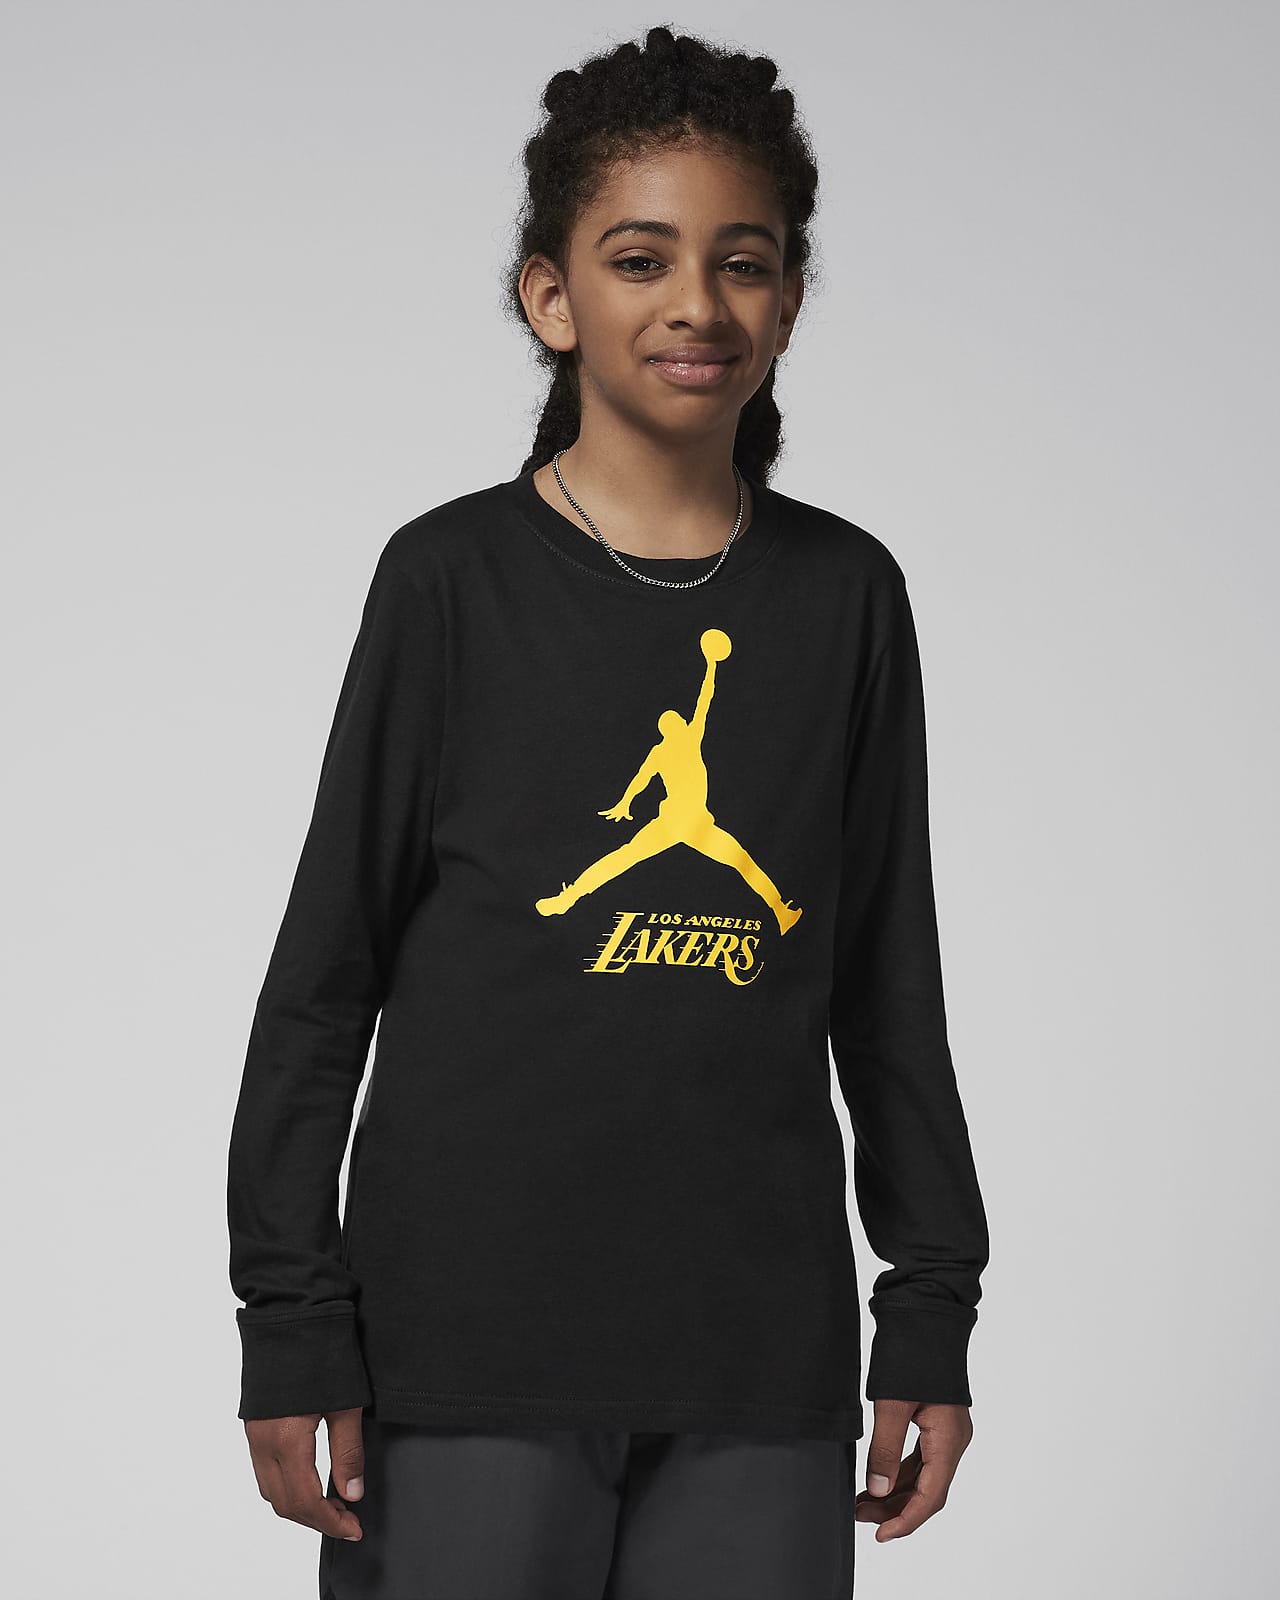 Μακρυμάνικο T-Shirt Jordan NBA Λος Άντζελες Λέικερς Essential για μεγάλα αγόρια